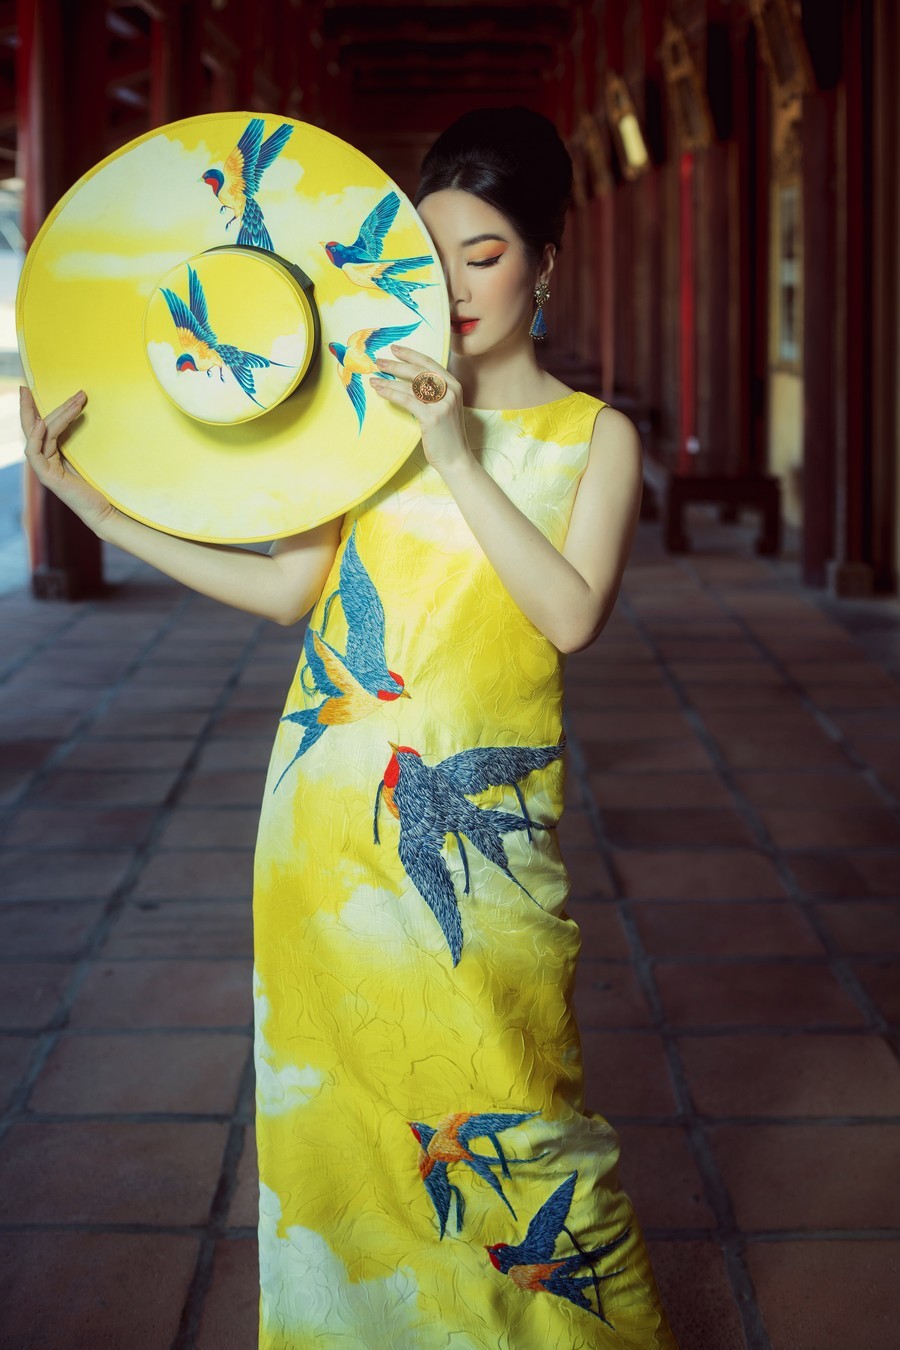  
Váy dáng suông cổ điển vẽ nên bức tranh nghệ thuật với các chi tiết thêu đính kết tinh xảo càng tôn được nét đẹp Việt. (Ảnh: Tang Tang)